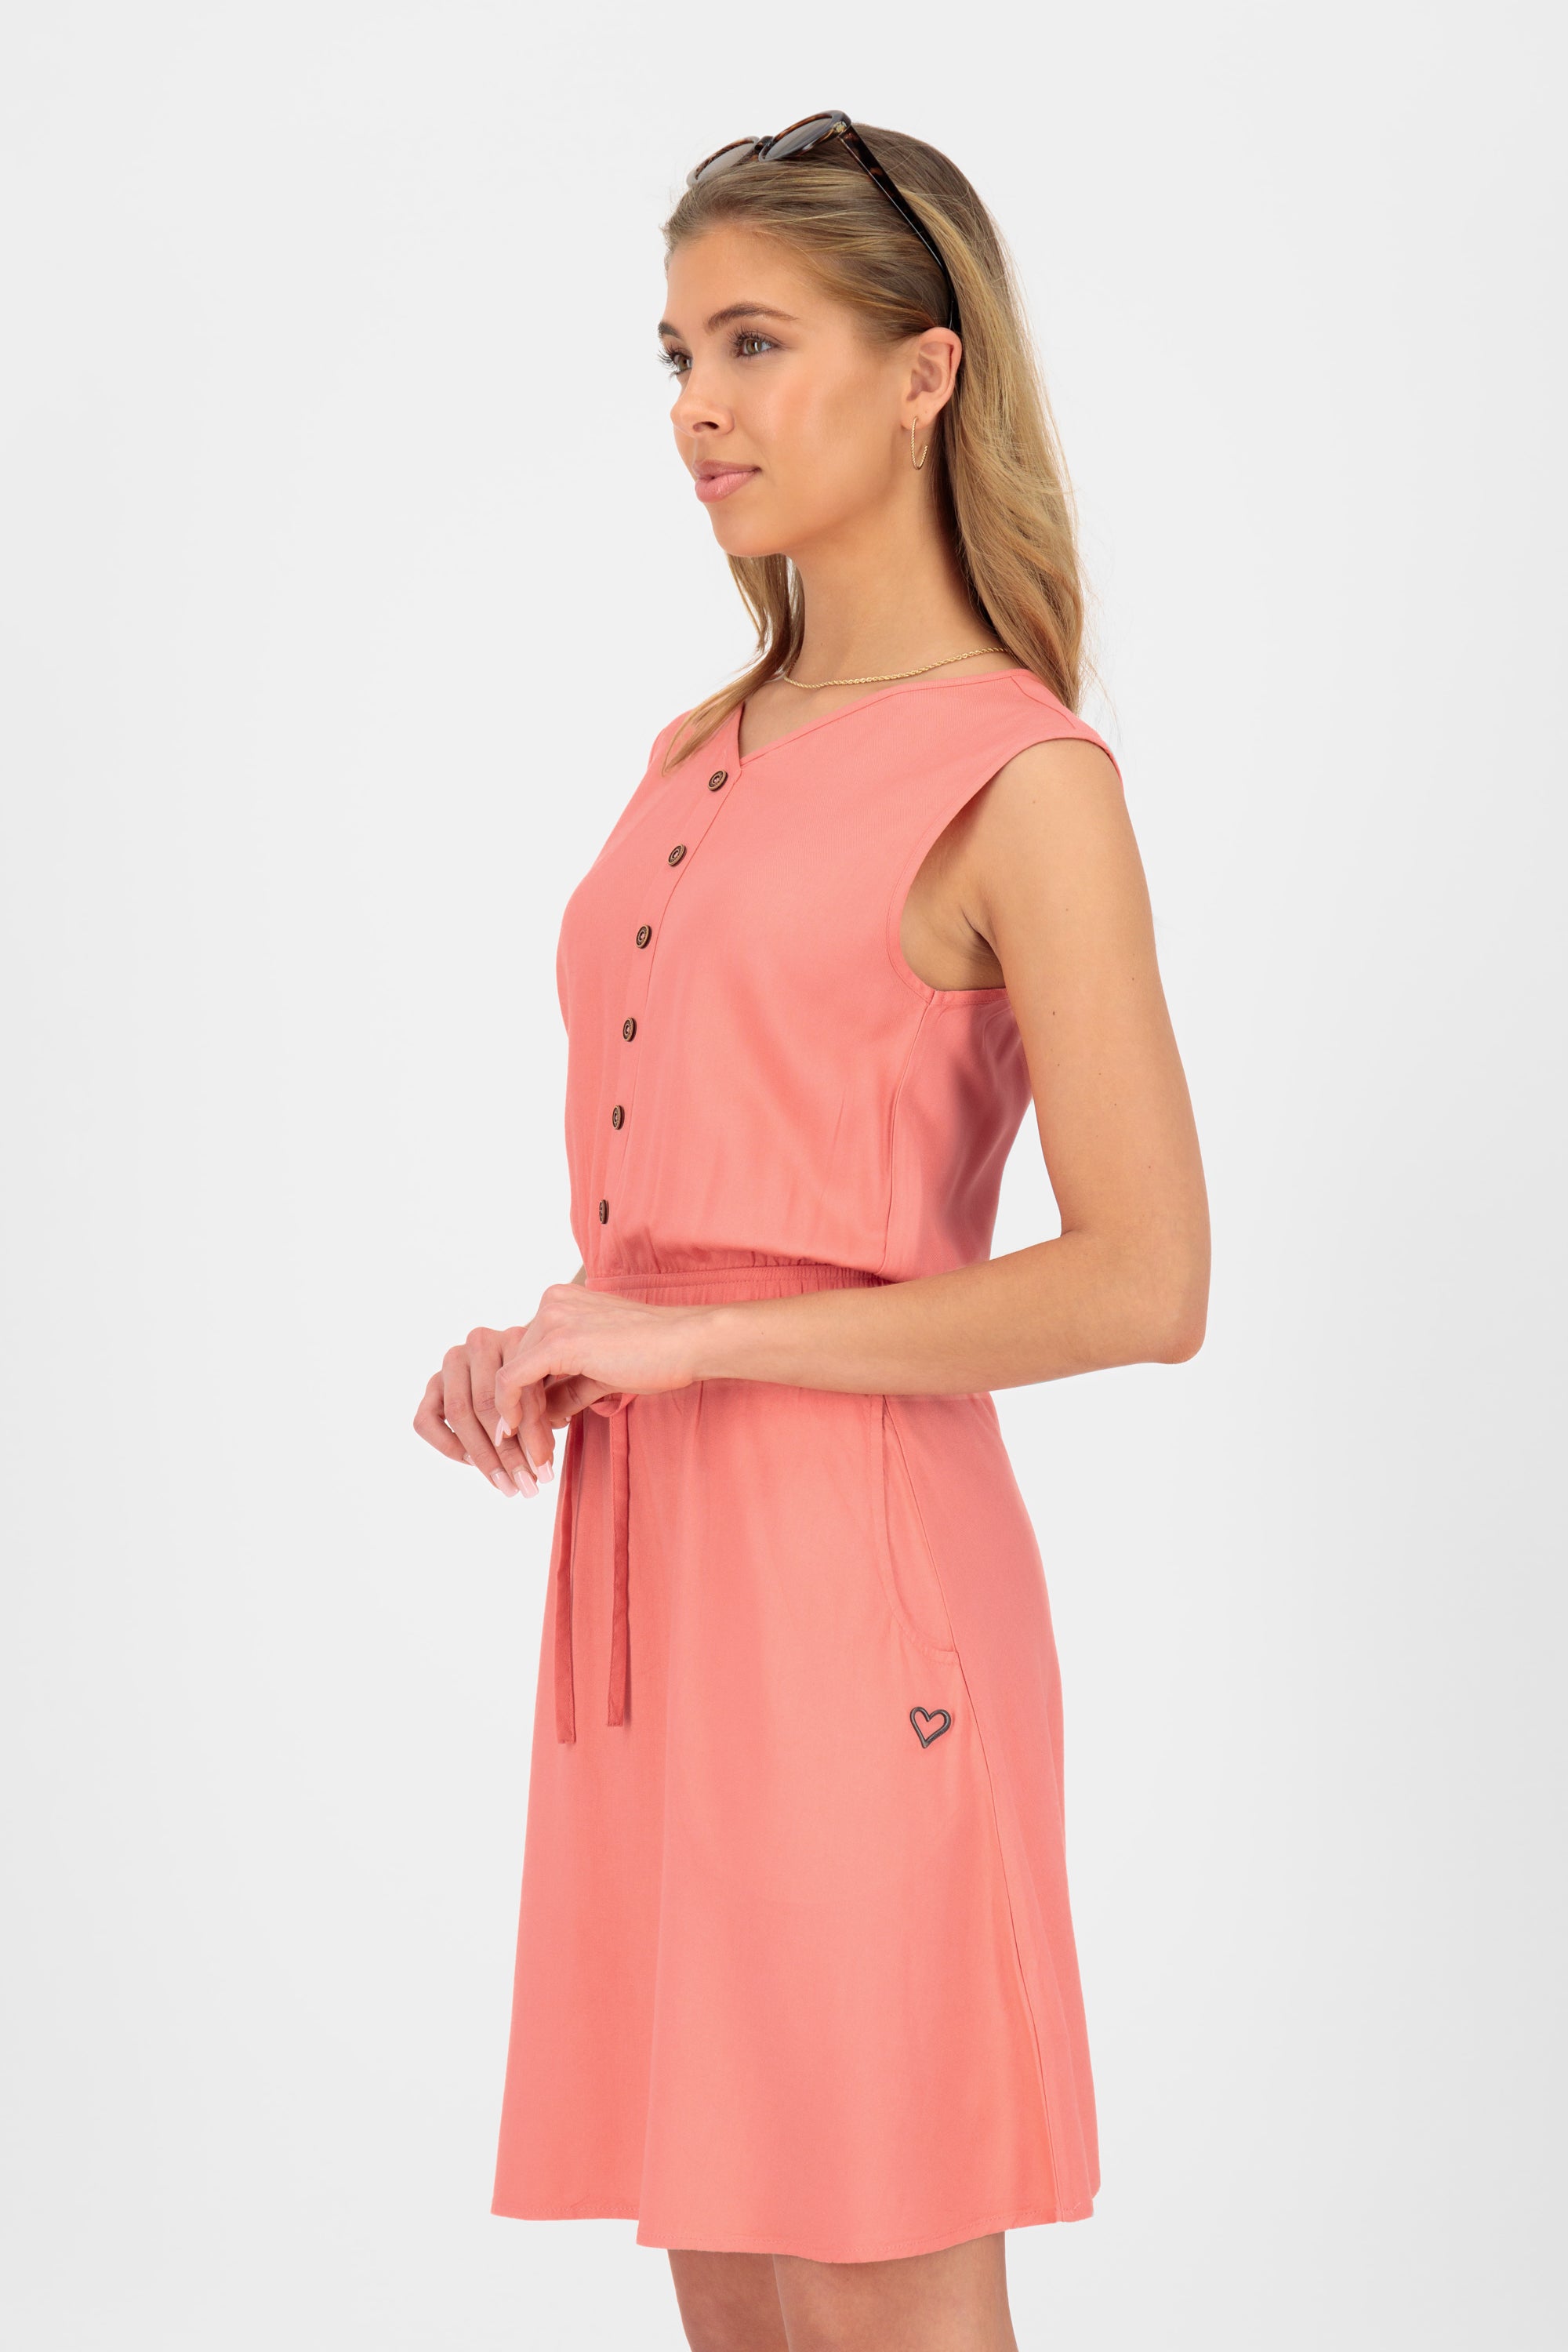 ScarlettAK A Sleeveless Dress Pink